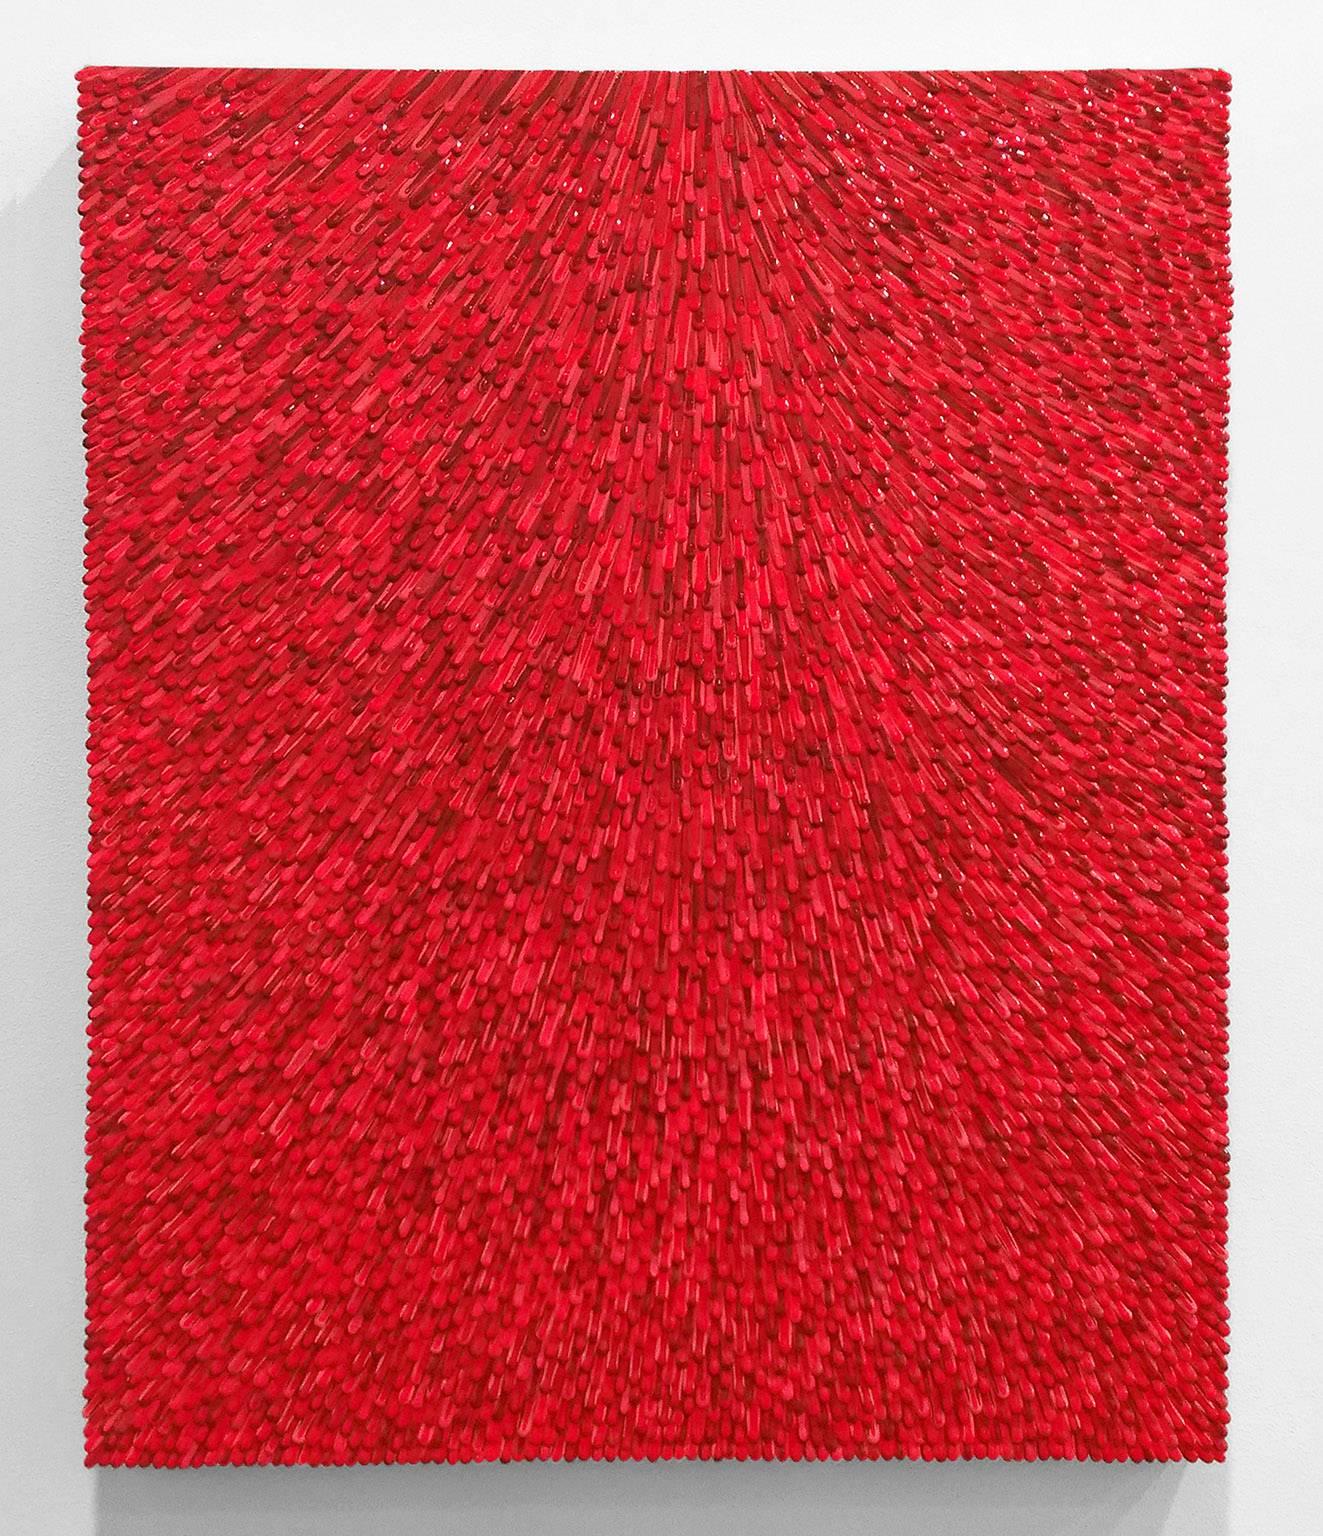 Omar Chacon Abstract Painting - Variation #1 of Mesalina Roja VA